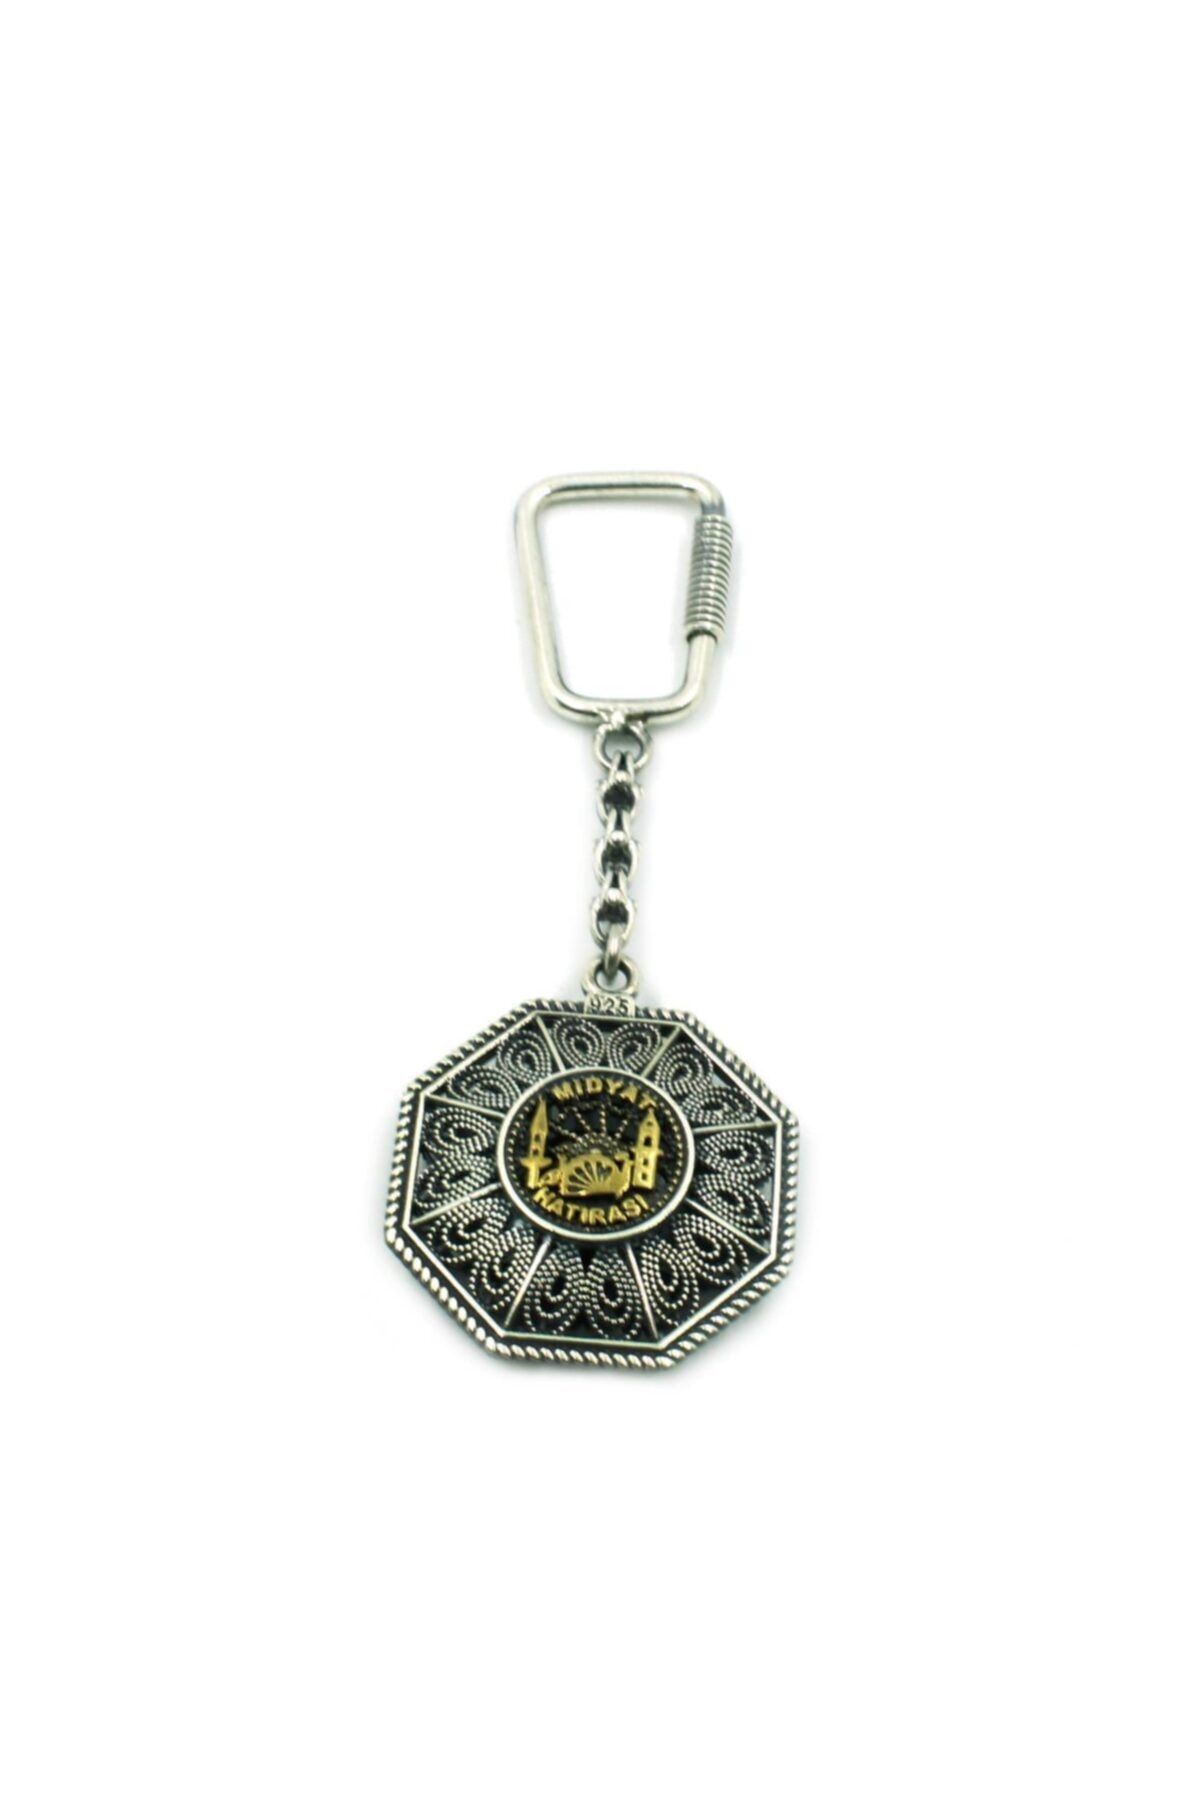 Aykat Midyat Hatırası Logolu Oksitli Telkari Gümüş Anahtarlık Ant-46